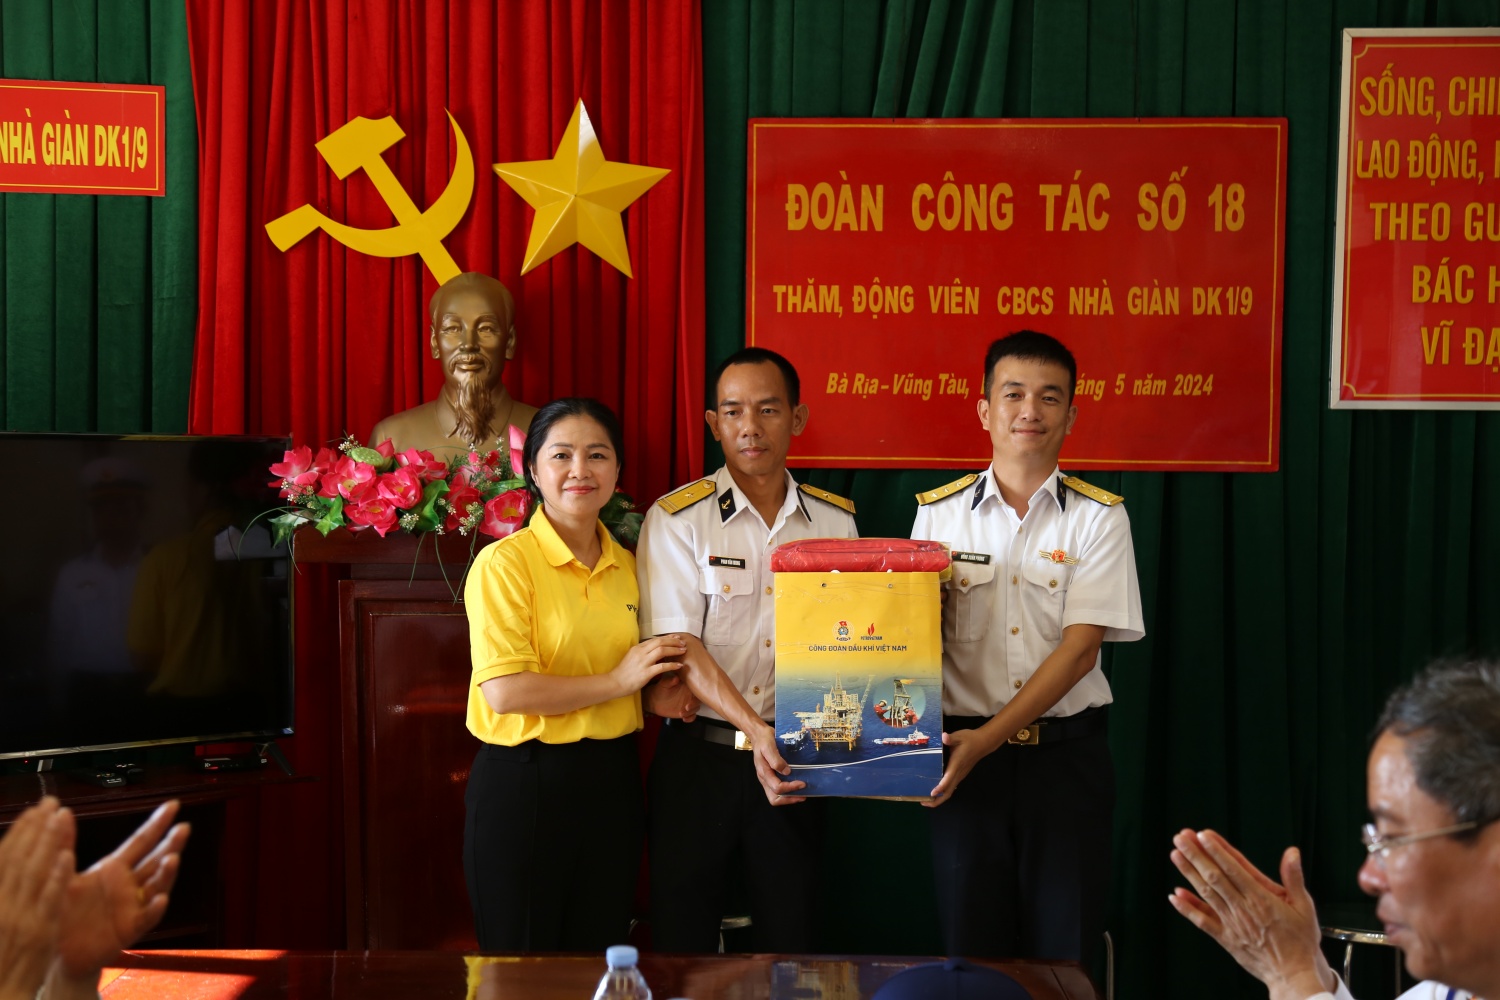 Tập đoàn Dầu khí Việt Nam thăm, động viên cán bộ chiến sĩ, người dân  tại huyện đảo Trường Sa và Nhà giàn DK1/9 – Ba Kè